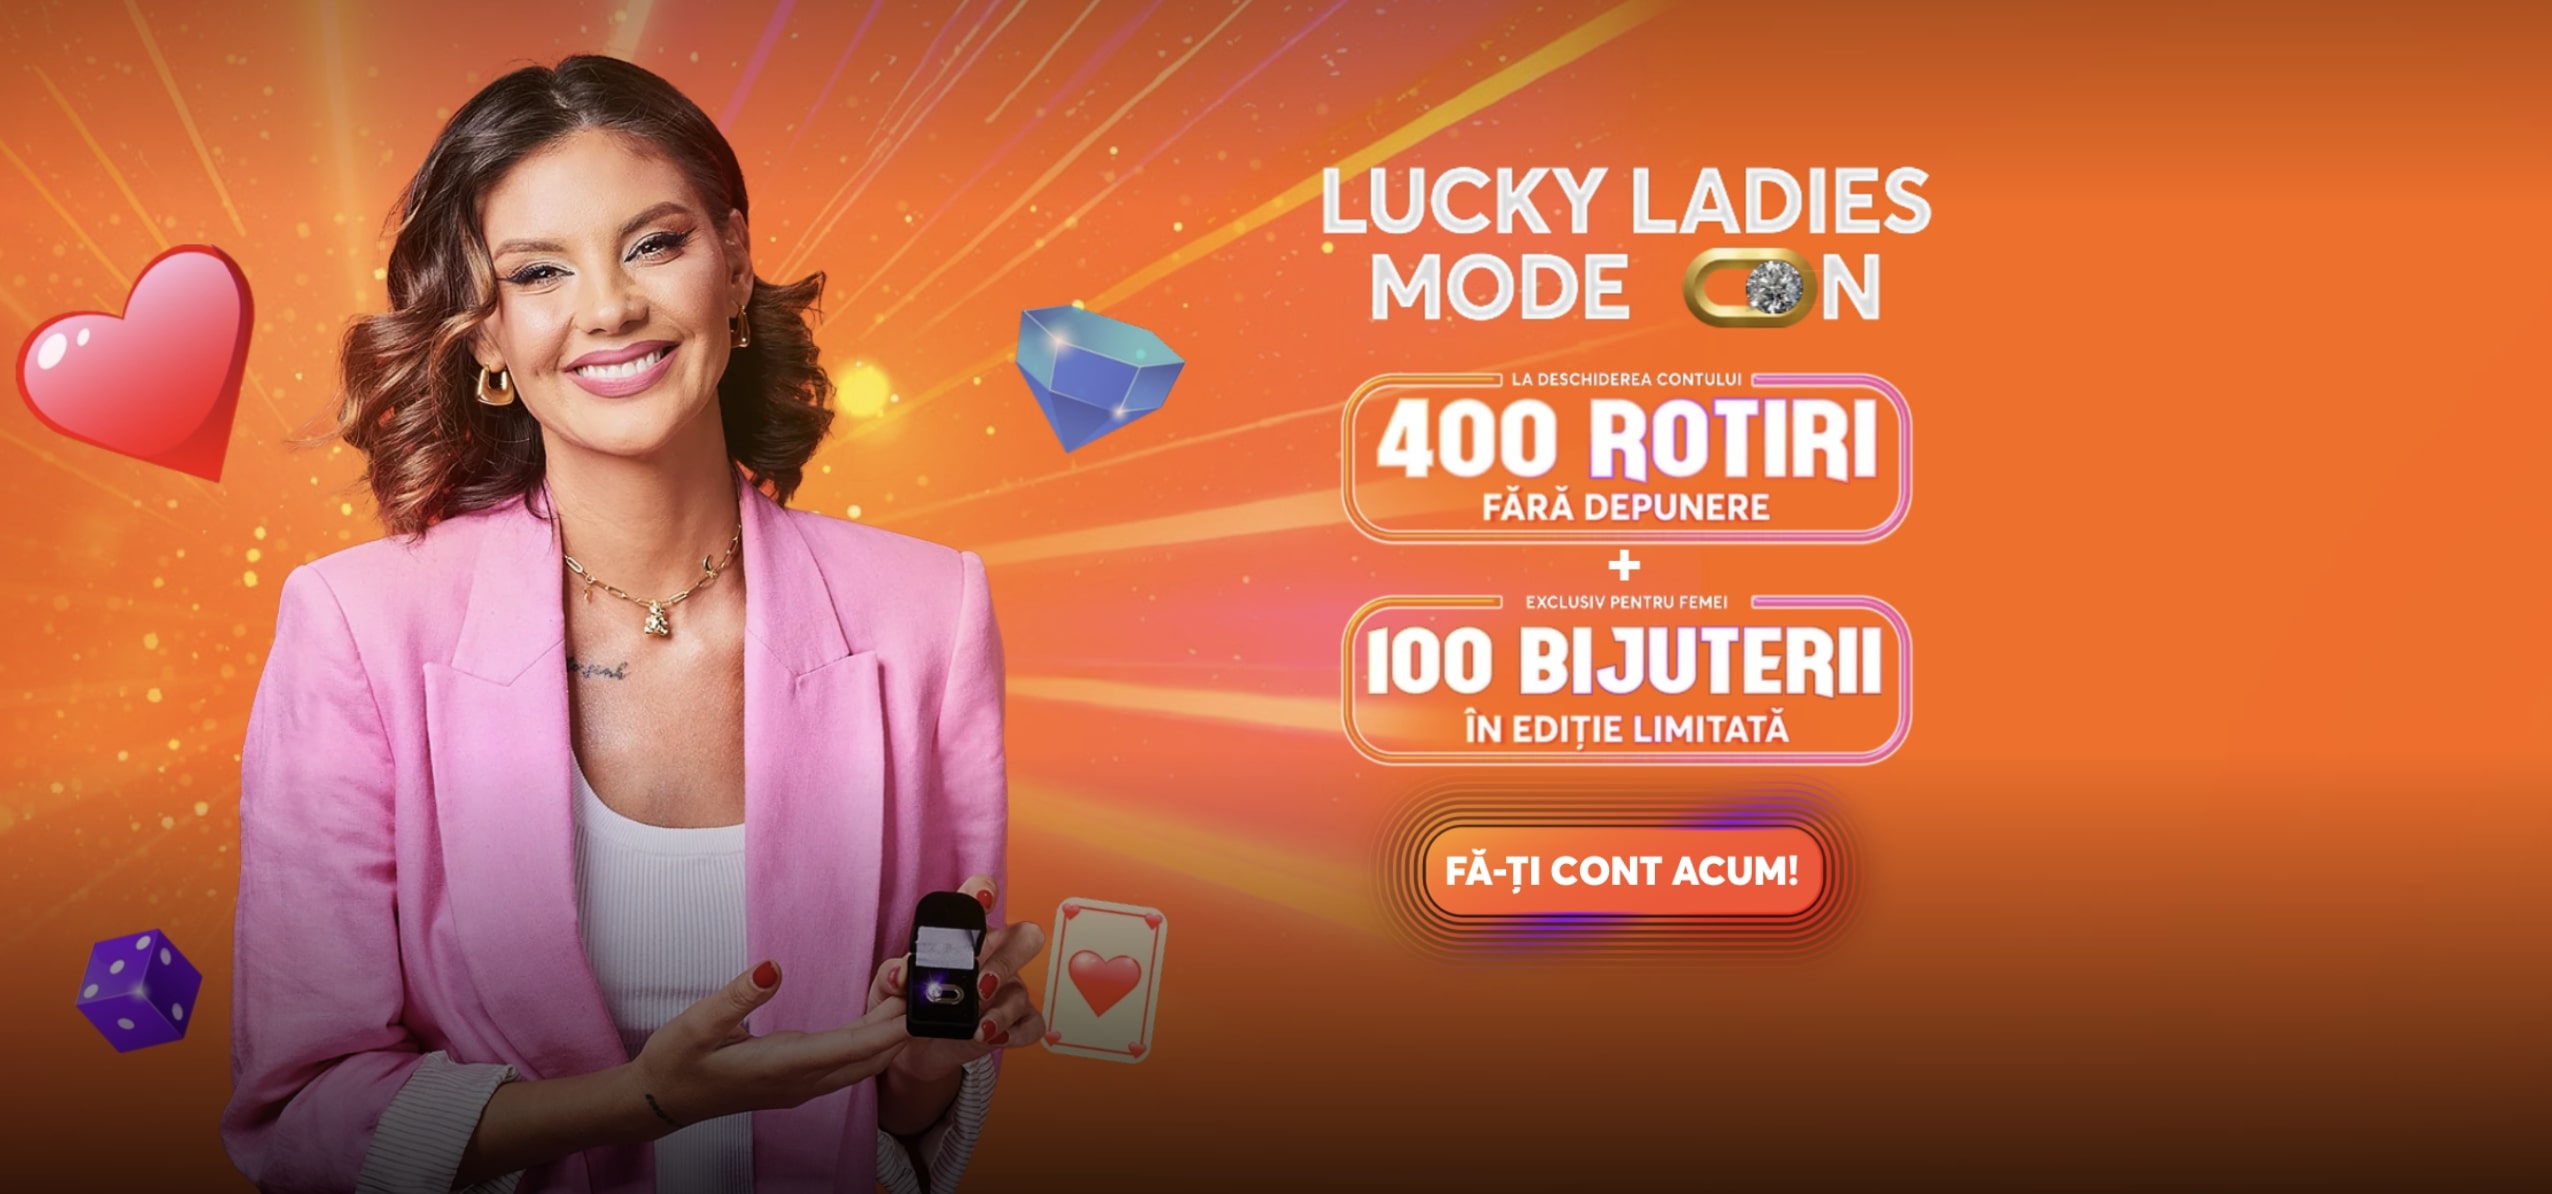 Lucky Ladies Mode On – Betano prezintă un nou show cu premii